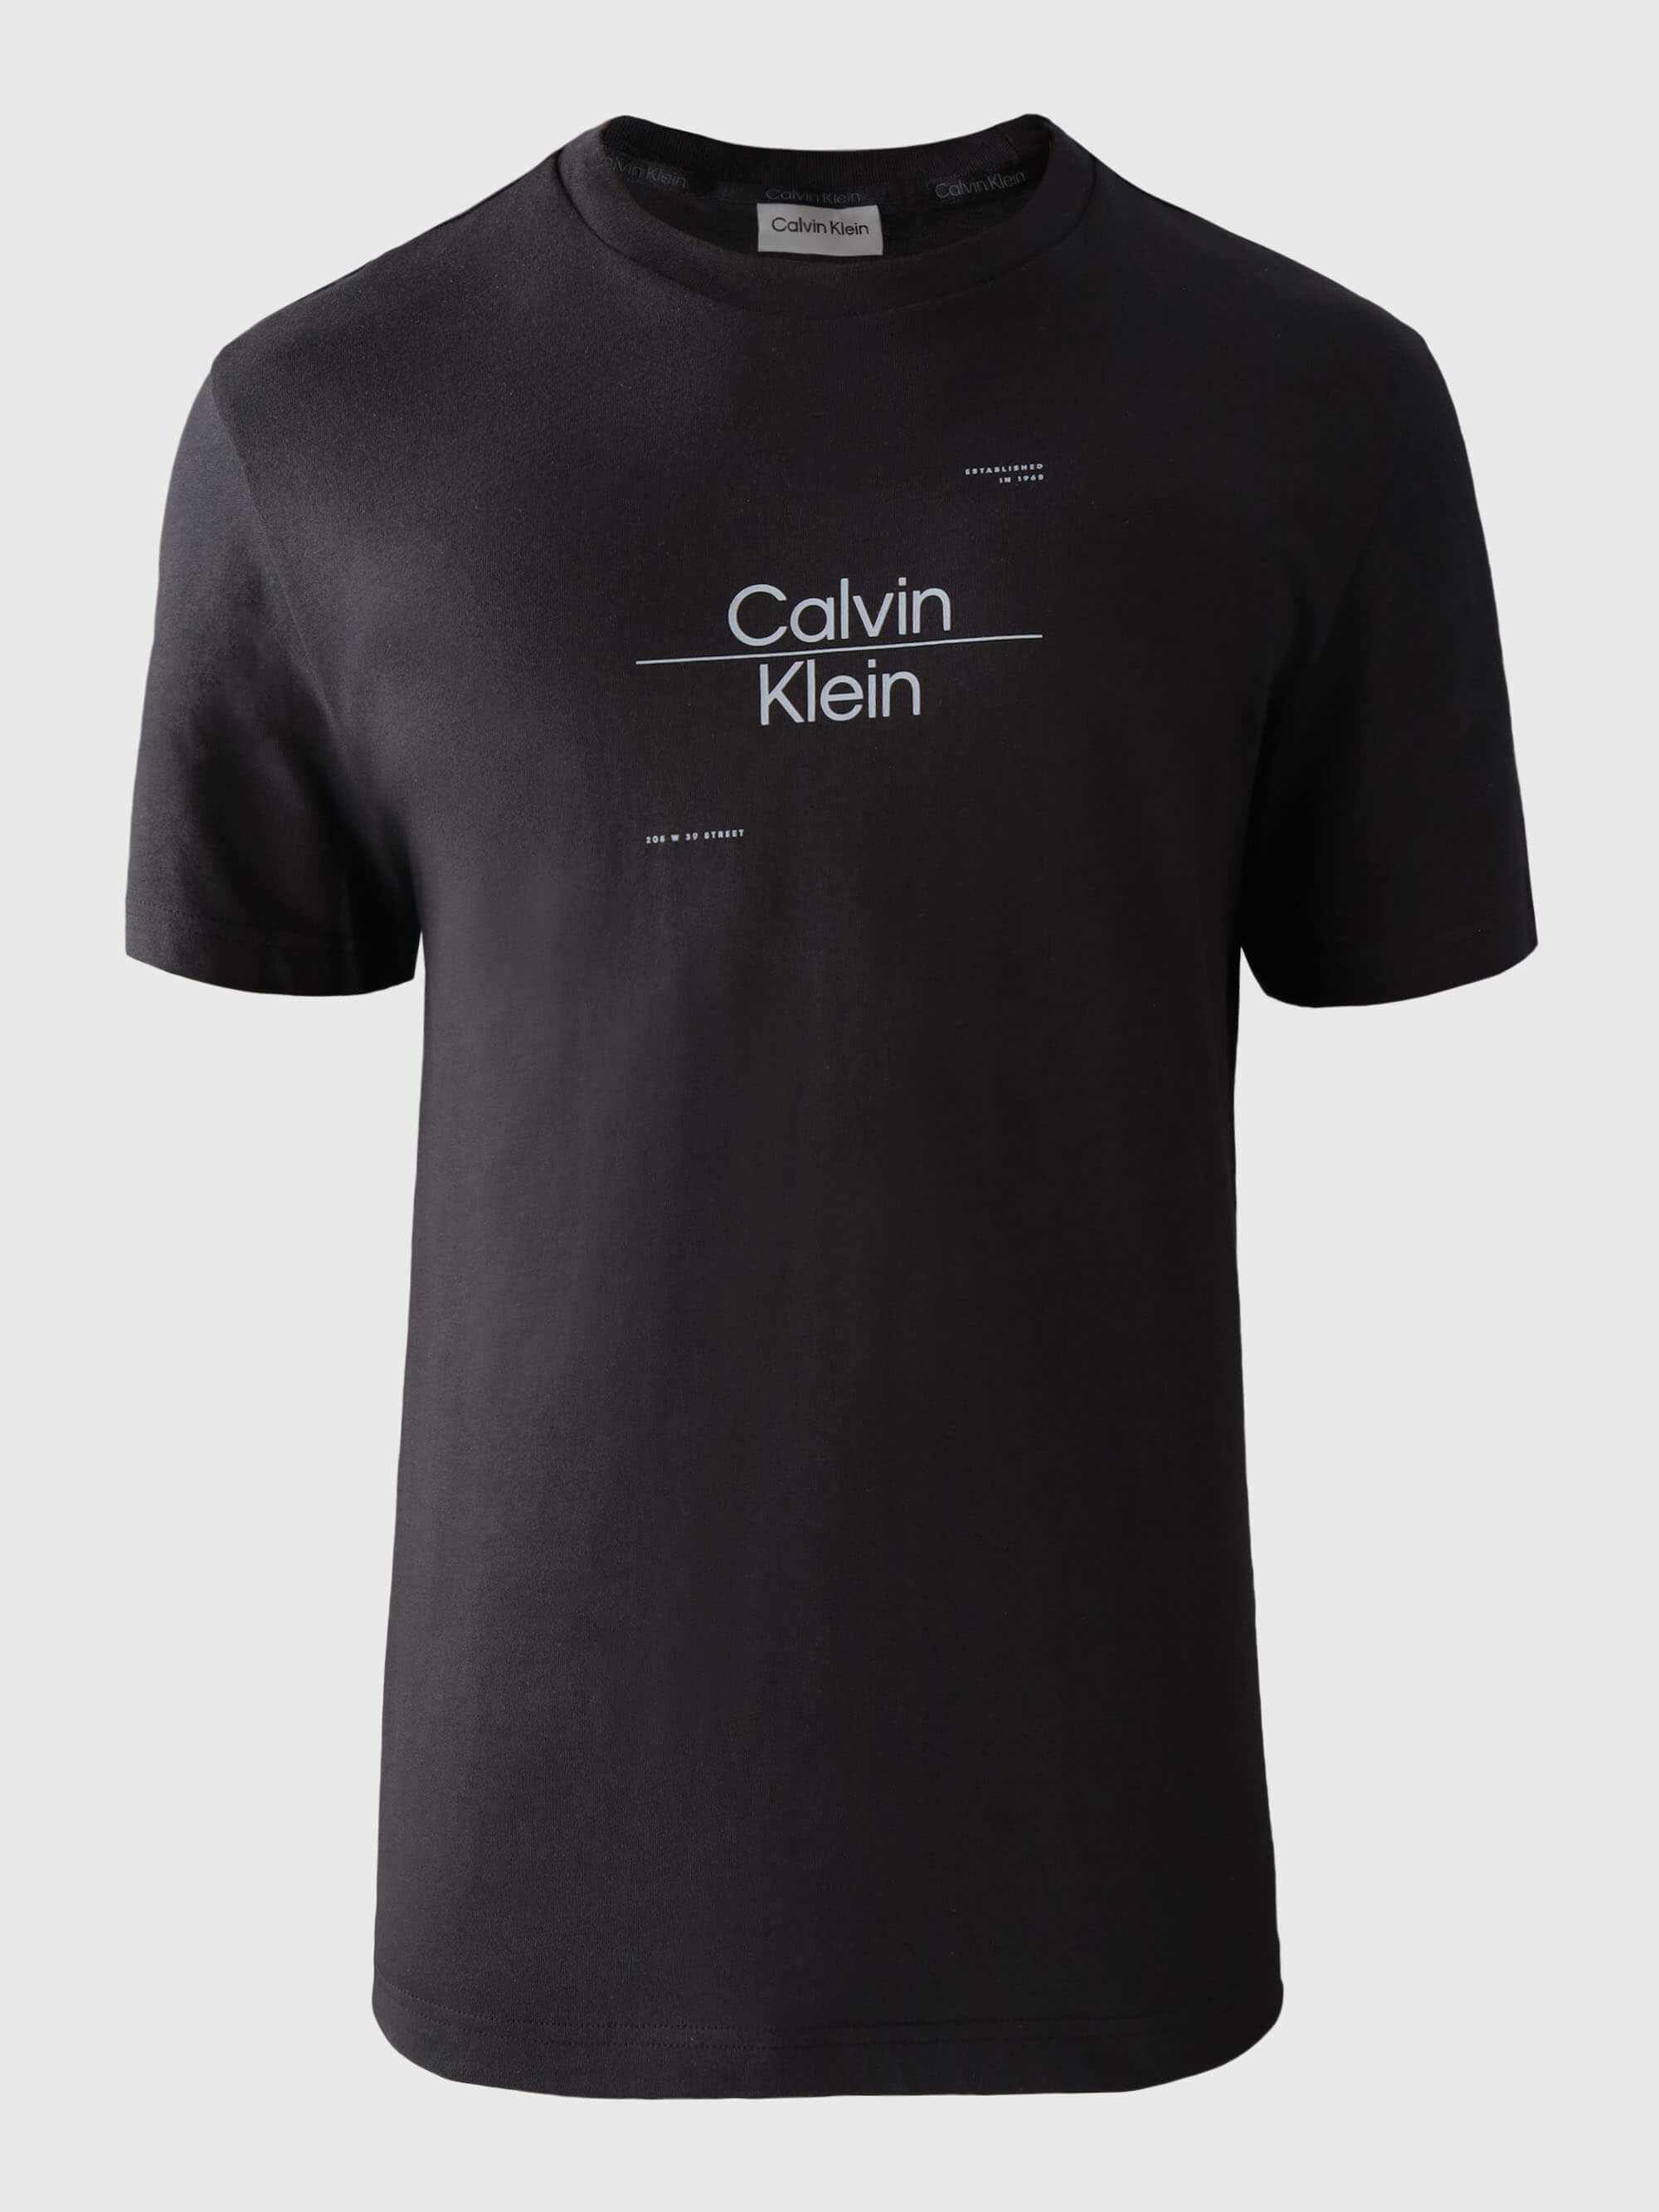 Playera Calvin Klein con Logo Estampado Hombre Negro